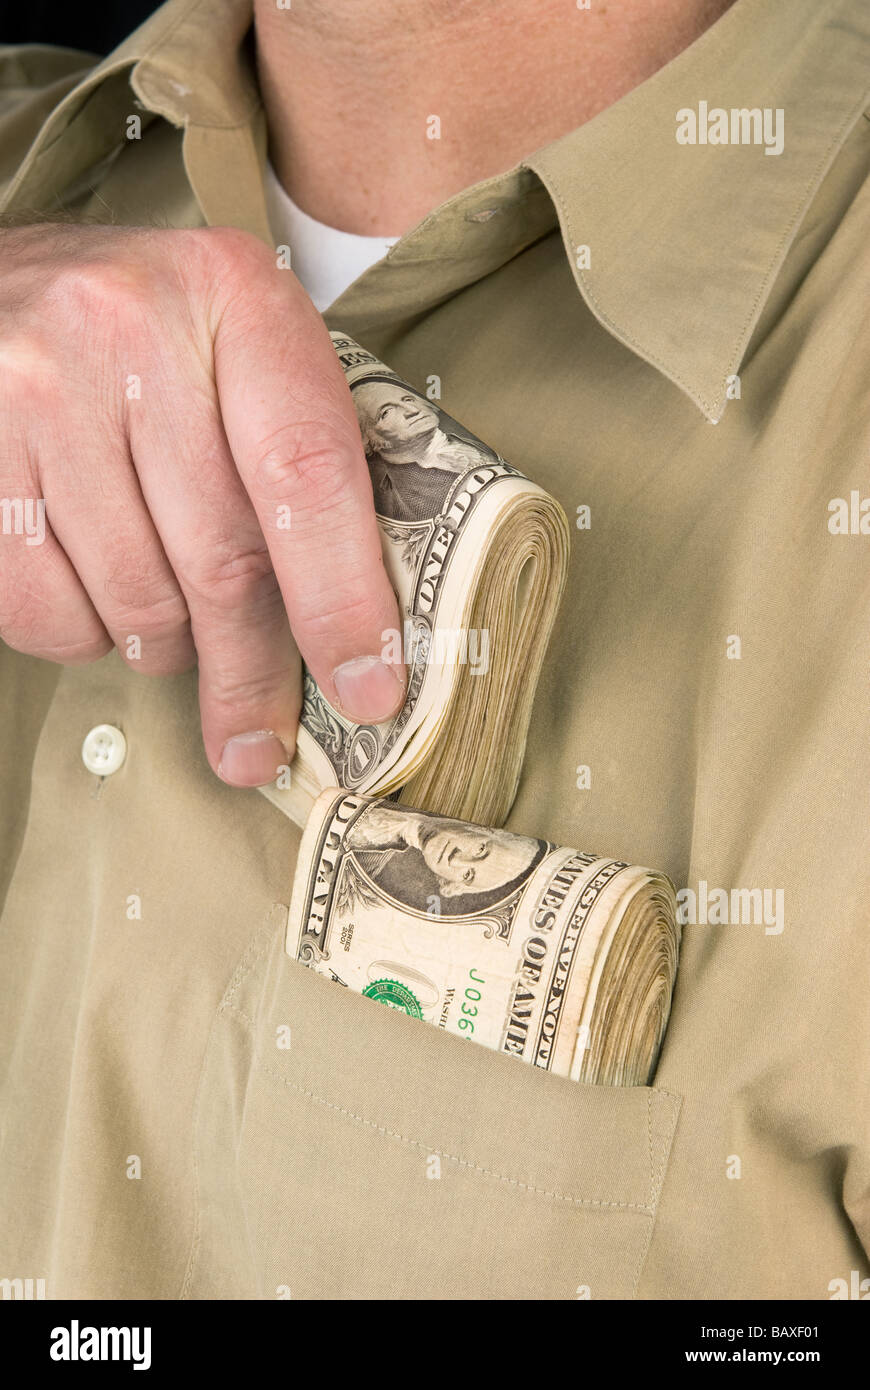 Un homme met liasses de billets dans sa poche de chemise Photo Stock - Alamy